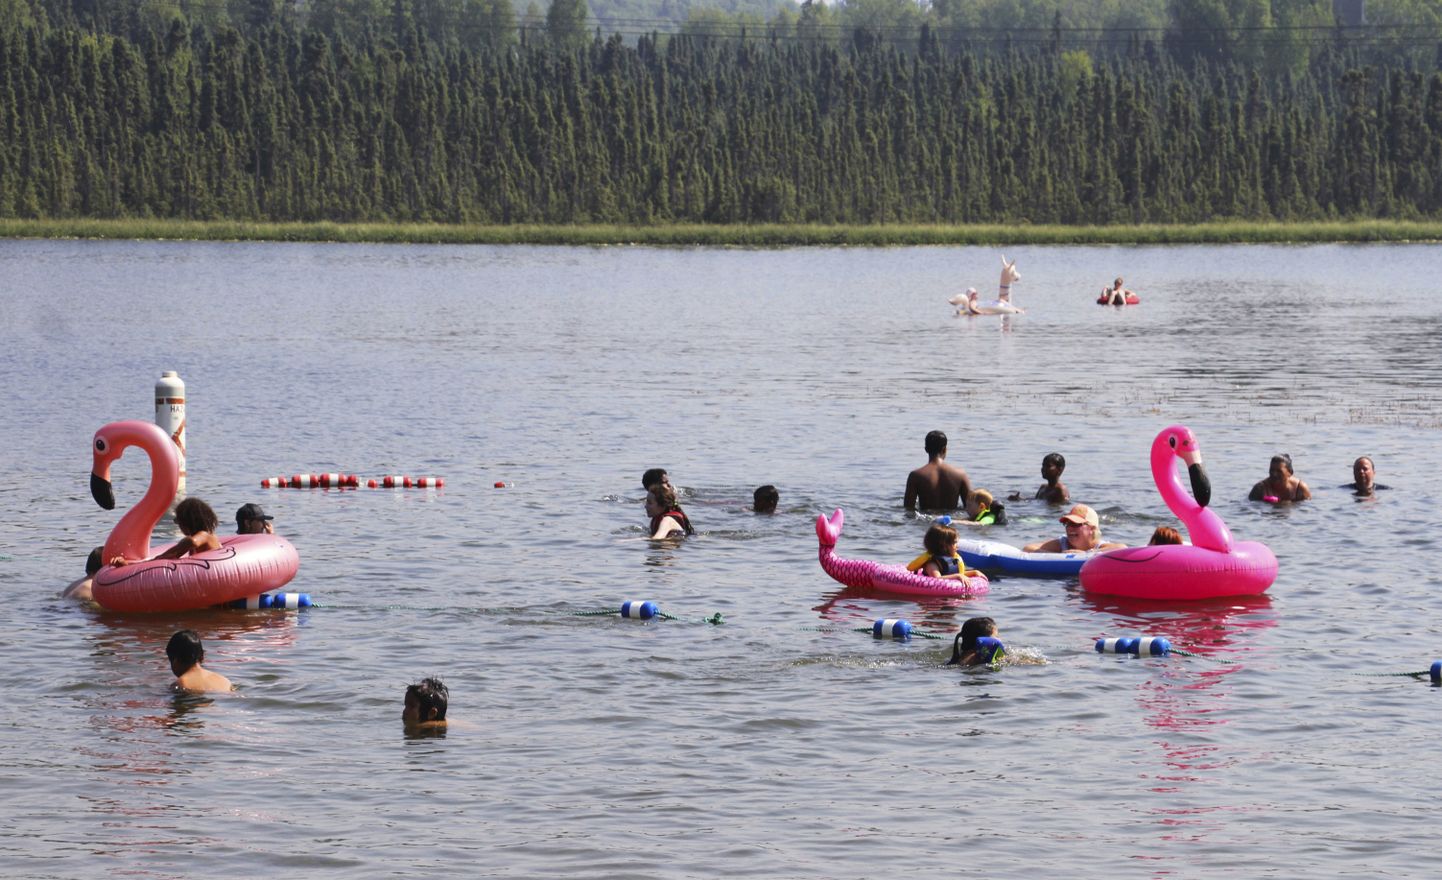 Bērni rotaļājas ar piepūšamiem flamingo ezerā piektdien, 2019. gada 5. jūlijā, Ankoridžā, Aļaskā. Oficiālā temperatūra ceturtdien, 4. jūlijā, pirmo reizi sasniegusi +32 grādus.

